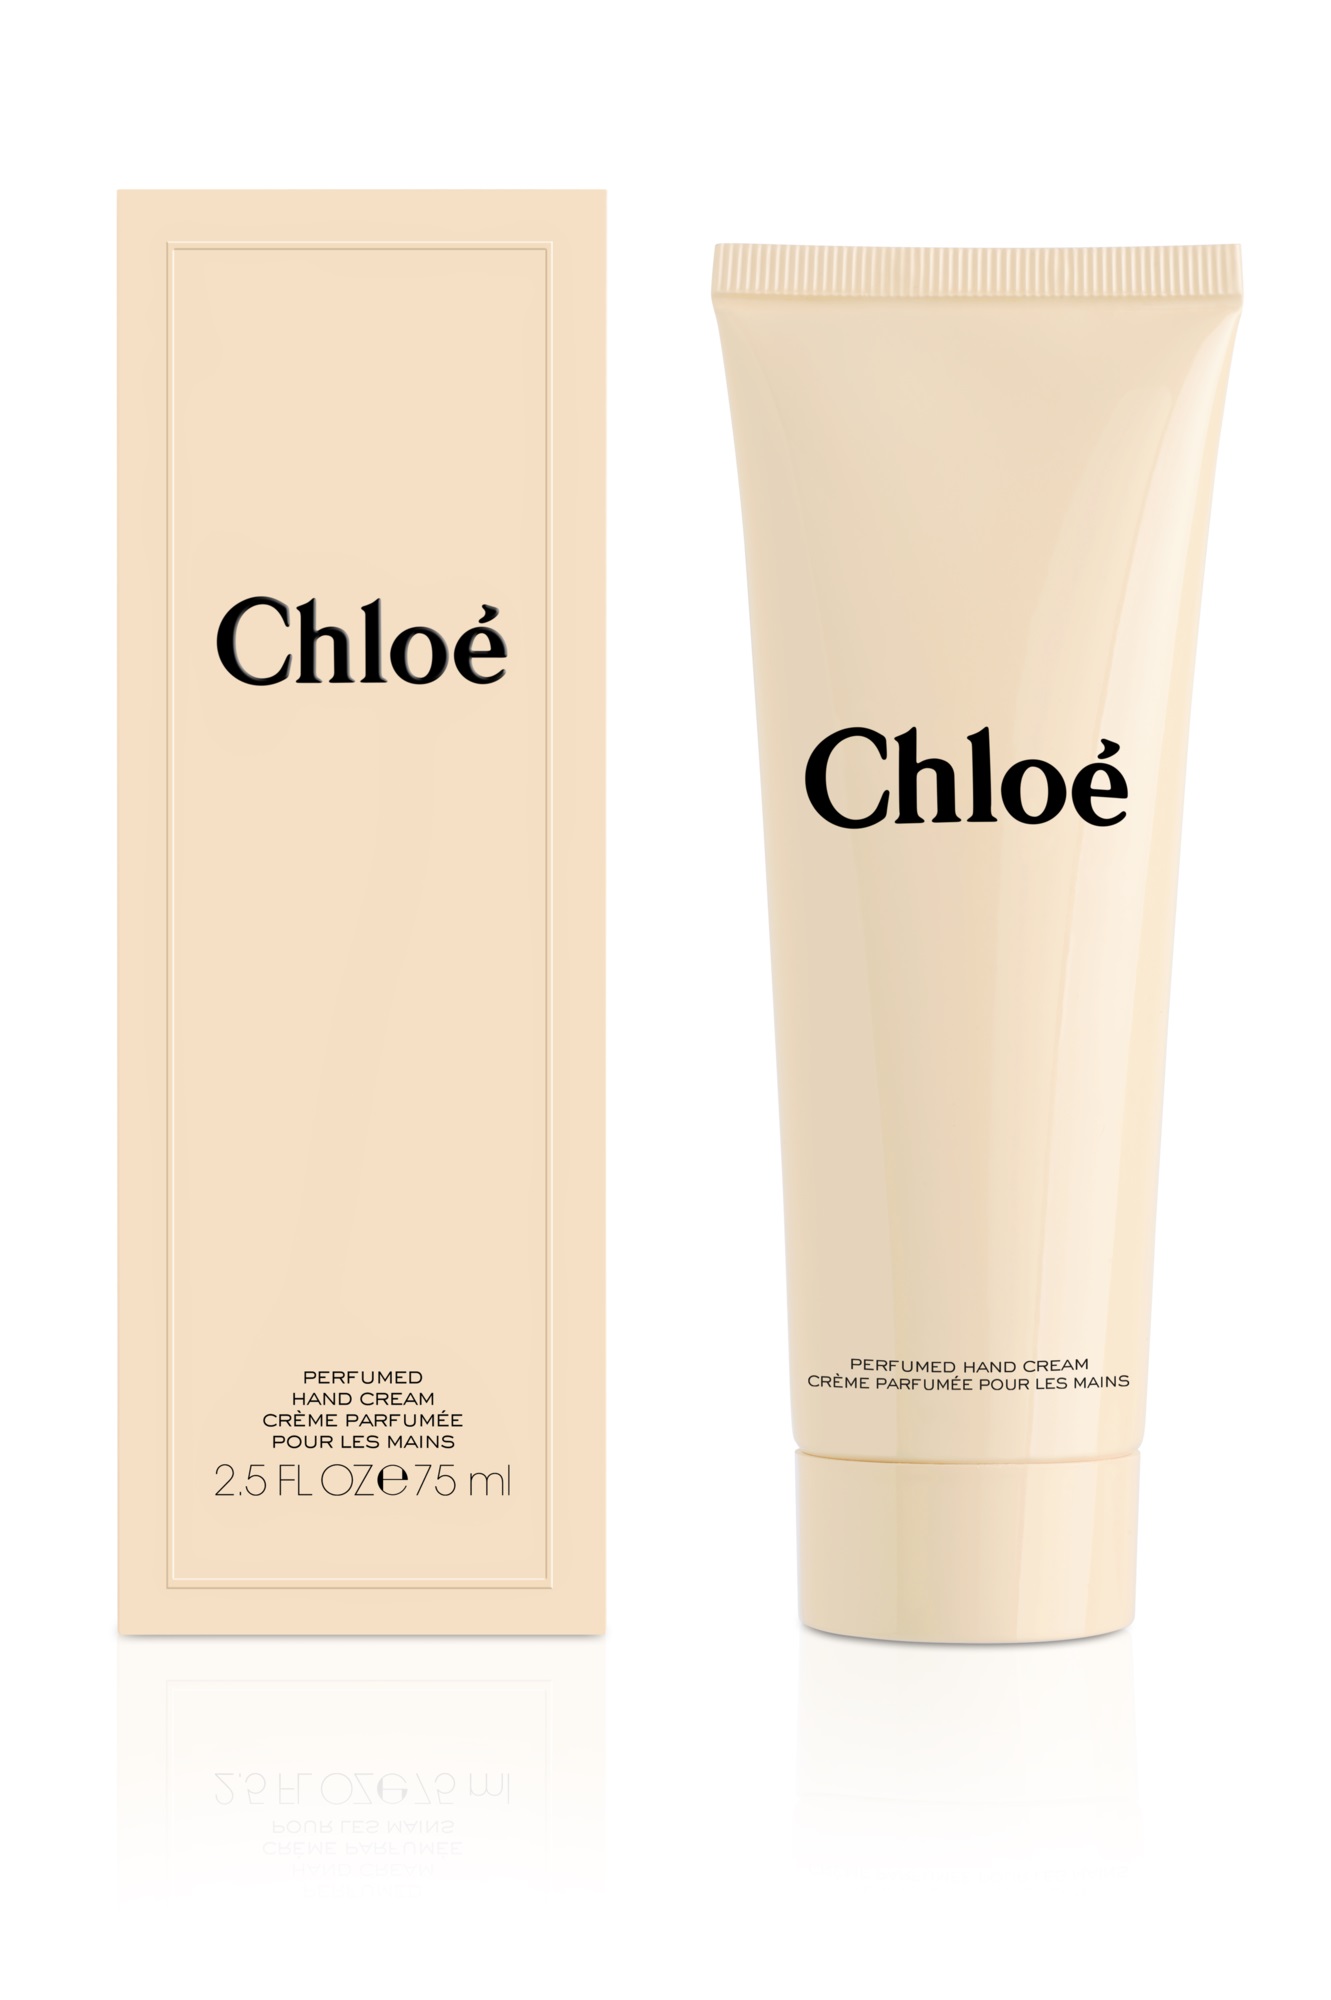 Chloé Perfumed Hand Cream